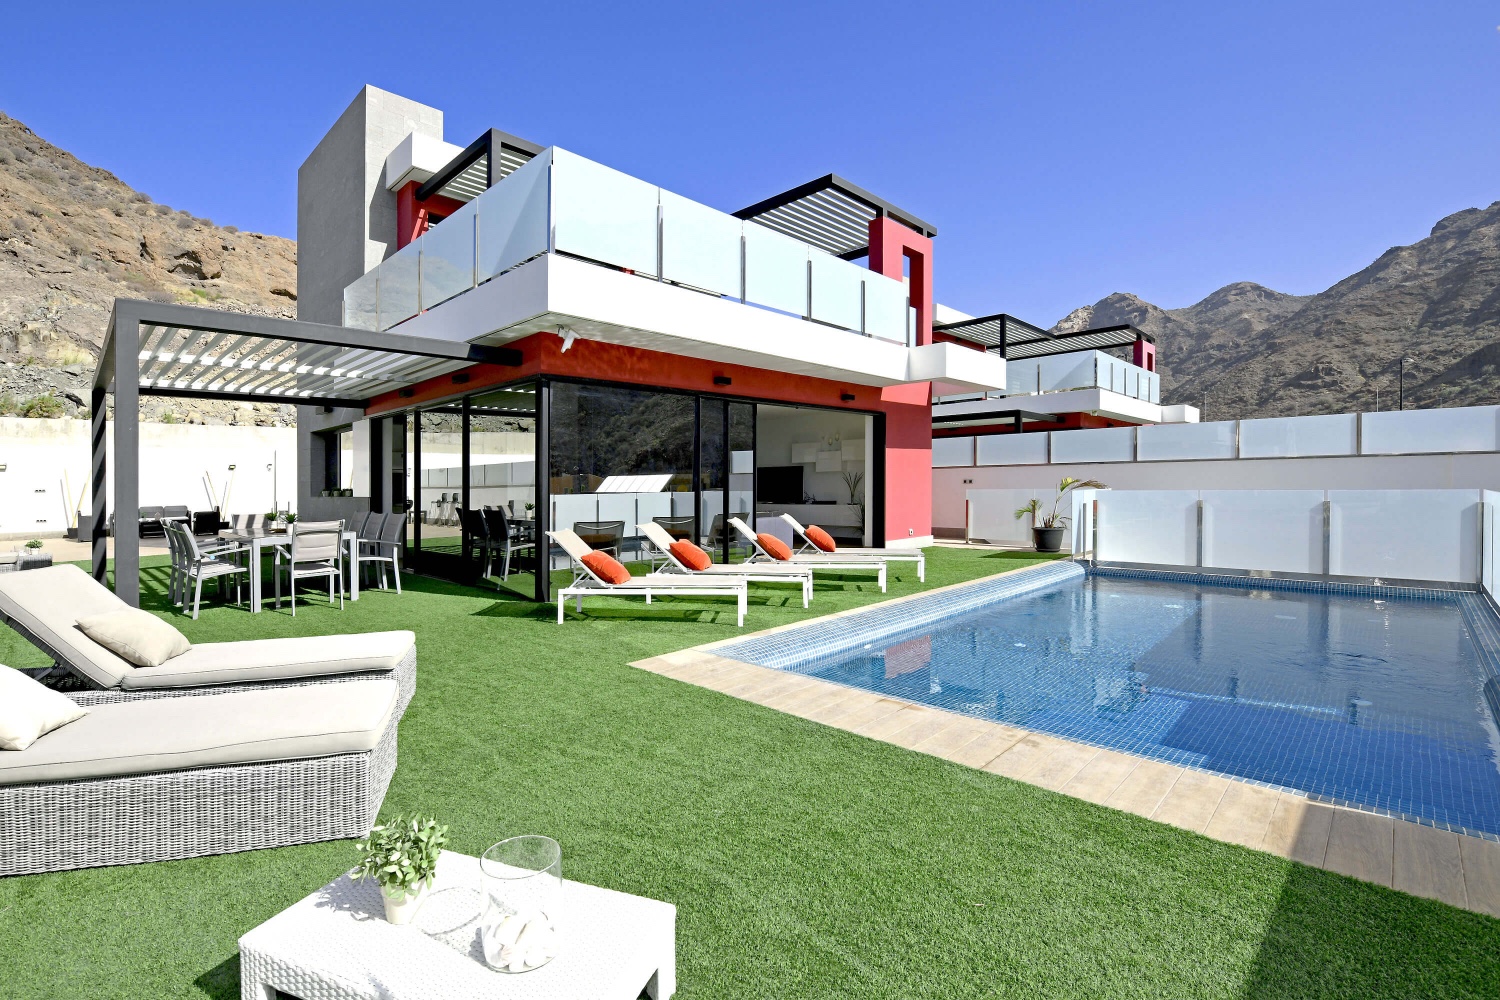 Moderne ferie villa godt utstyrt med et stort privat basseng, flere terrasser og utsikt til havet og fjellene, ligger nær Tauro strand i sør av Gran Canaria